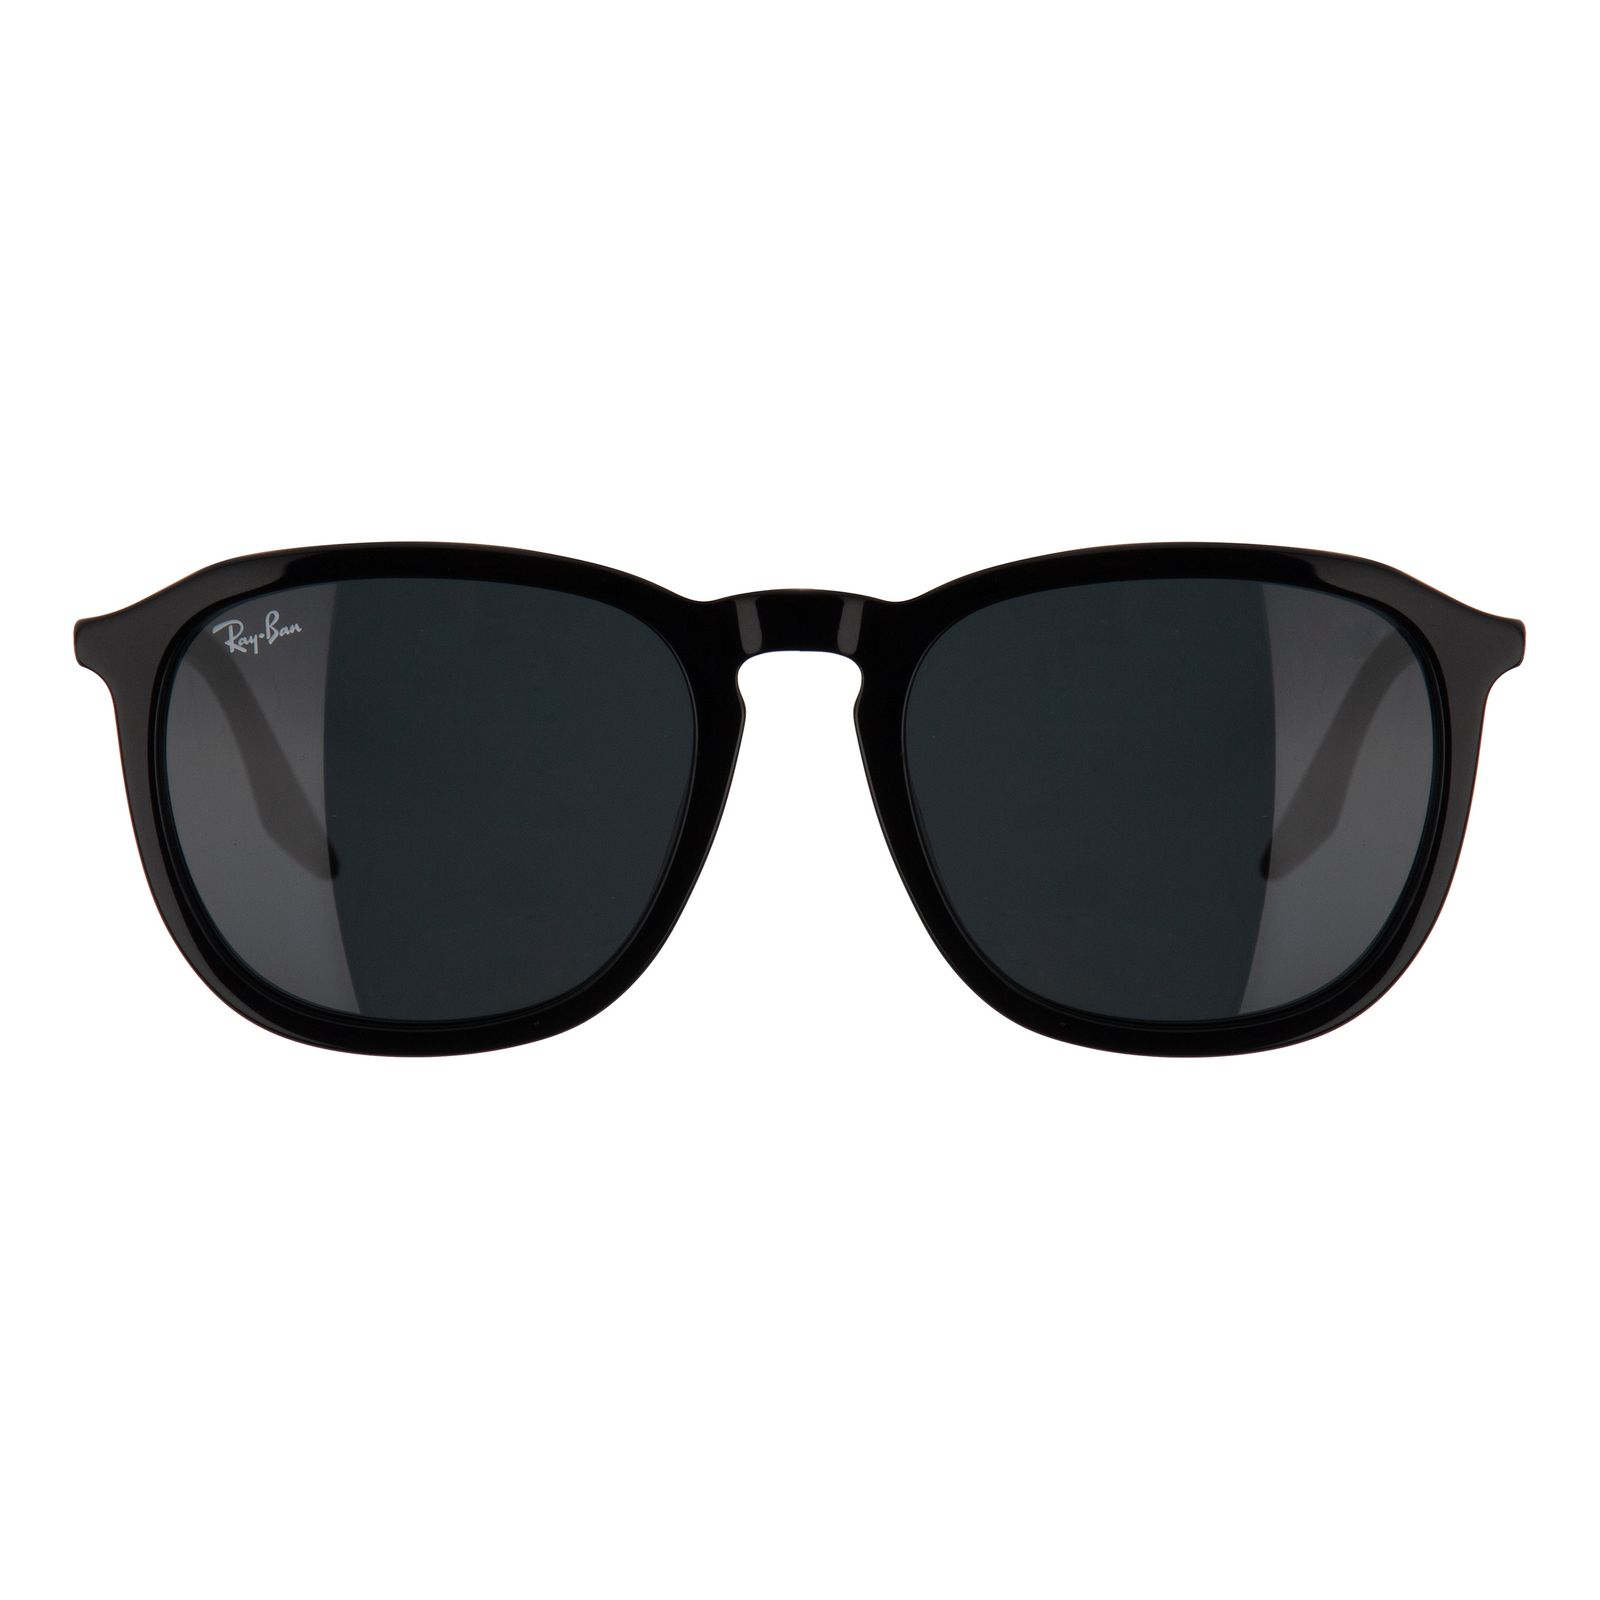 عینک آفتابی ری بن مدل RB2203-901/31 -  - 1